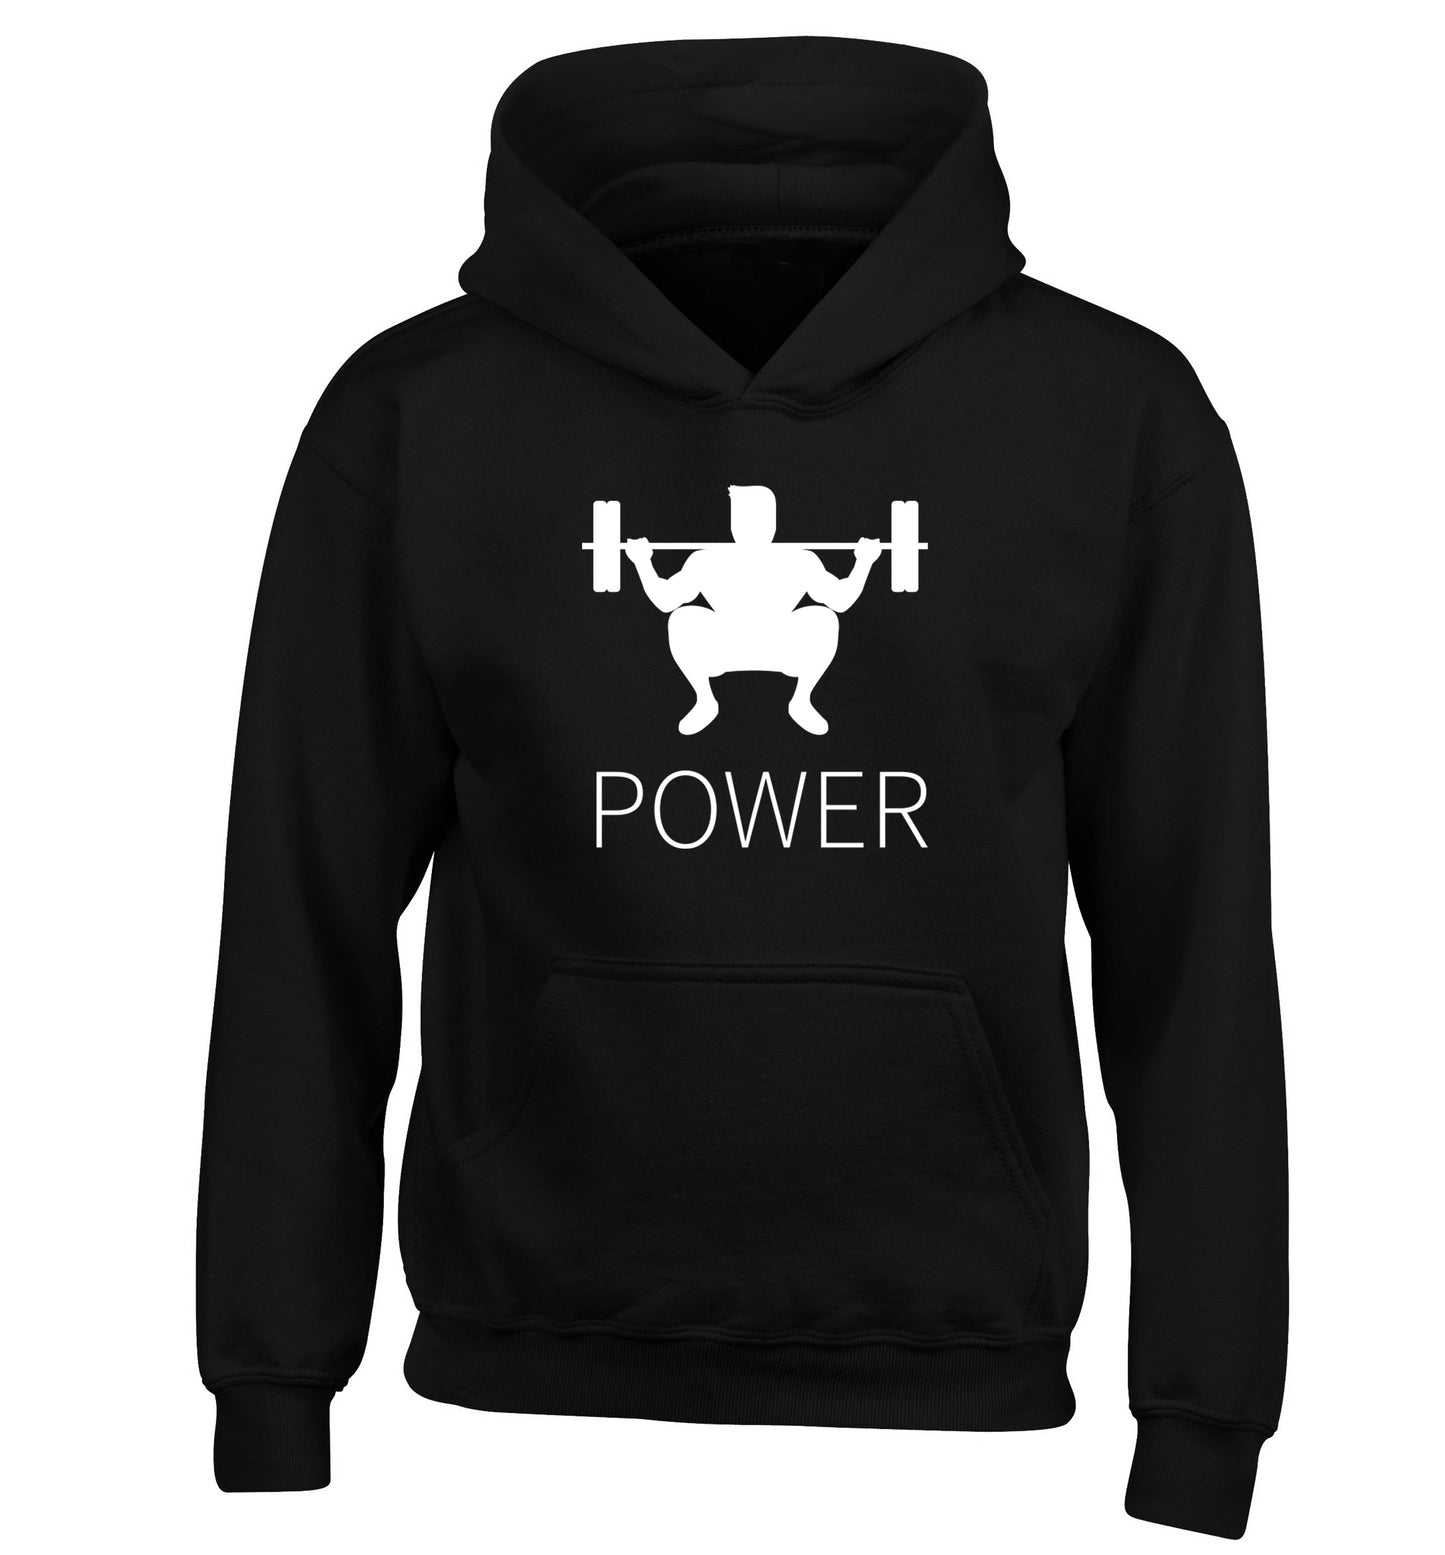 Lift power children's black hoodie 12-13 Years